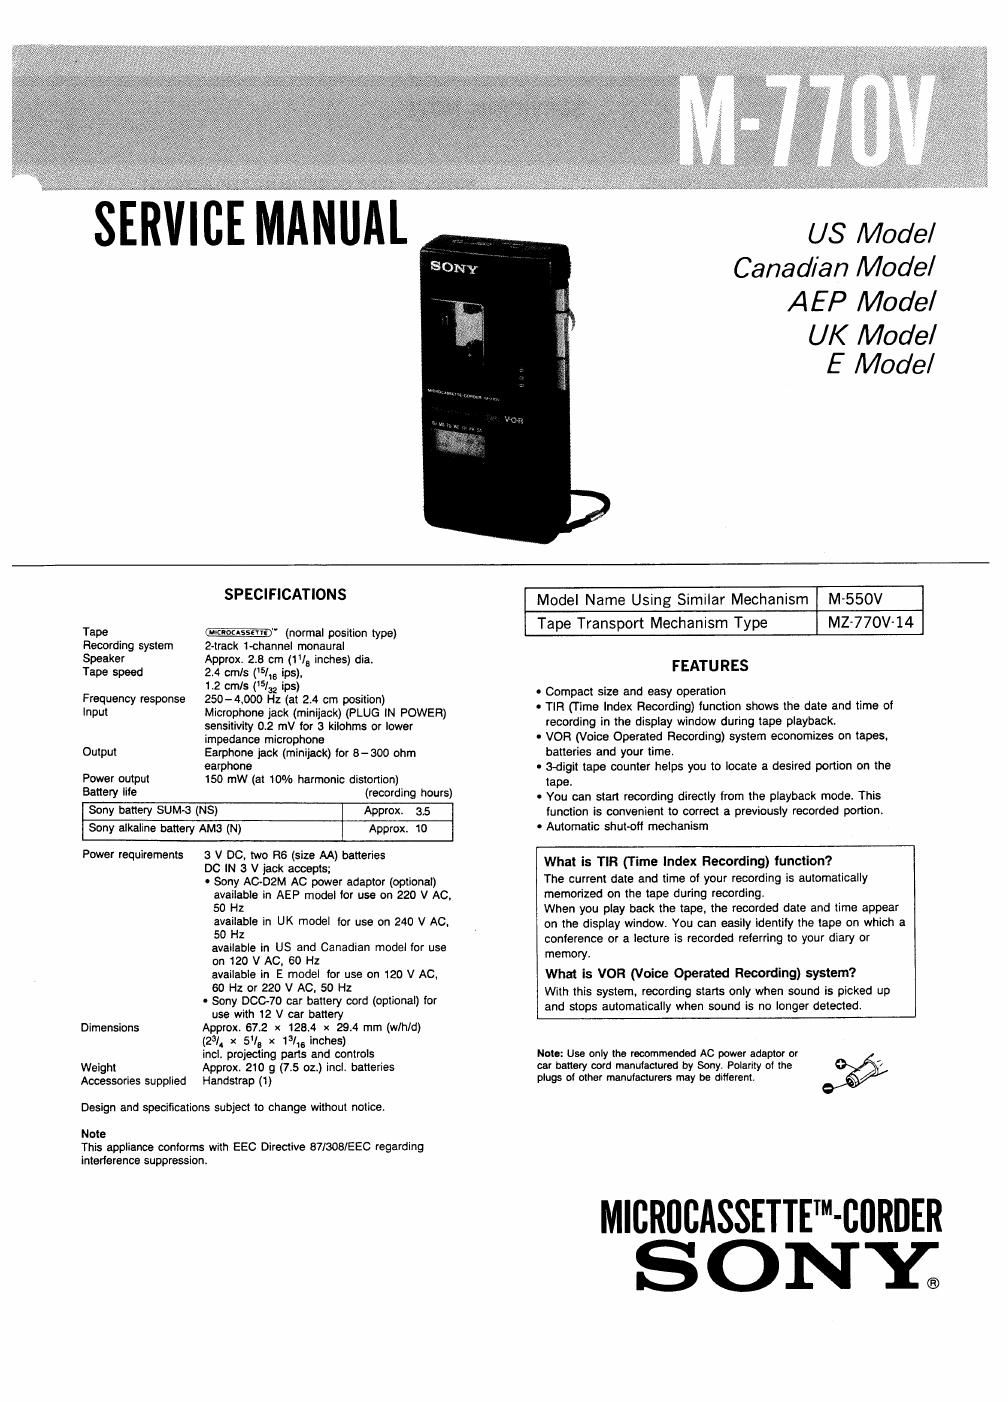 sony m 770 v service manual